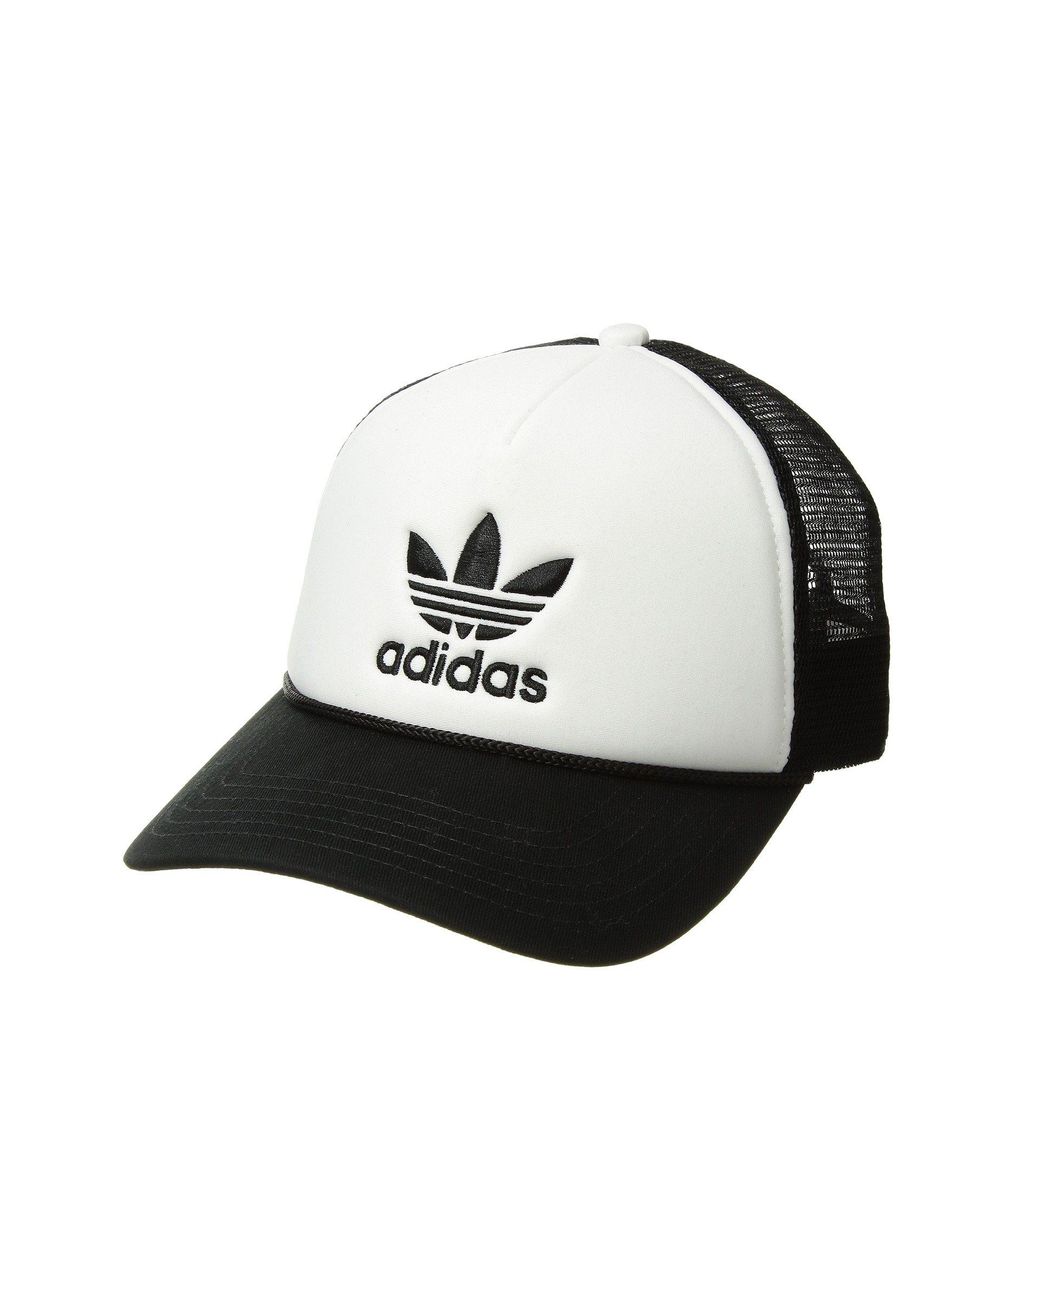 adidas Originals Originals Trefoil Mesh Snapback (black/white) Caps | Lyst